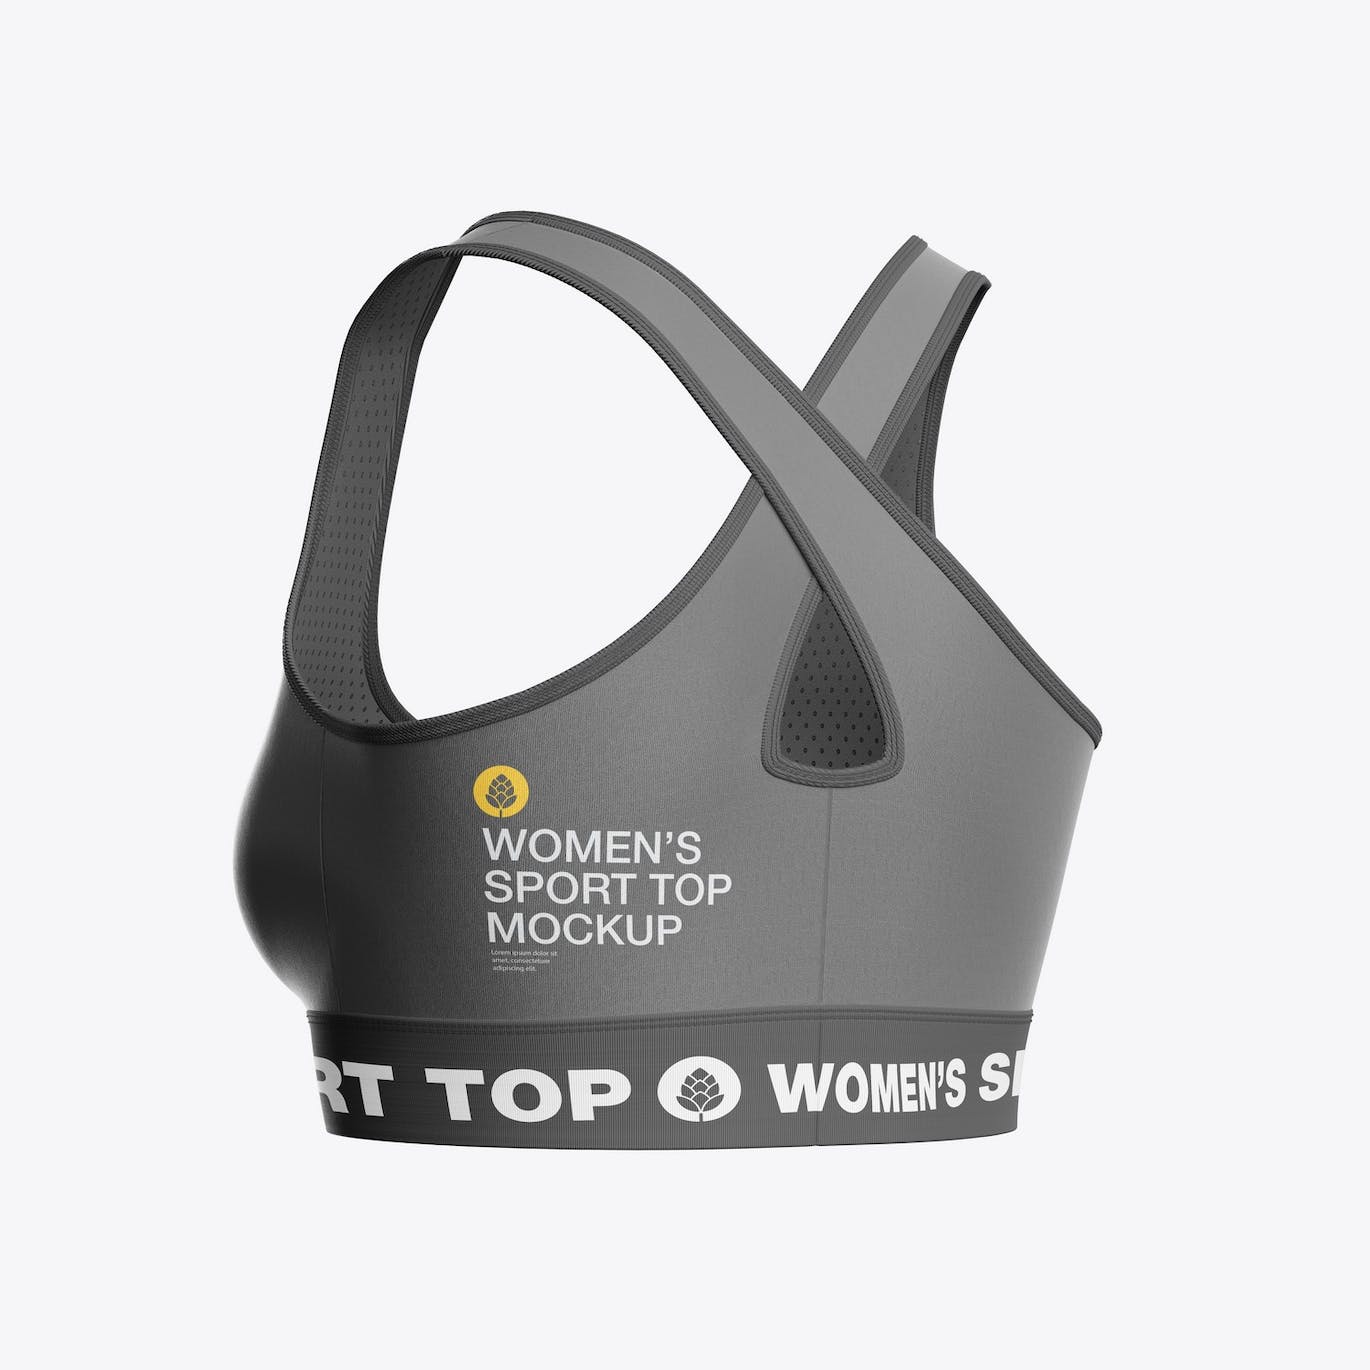 女子运动内衣品牌设计样机 Women’s Sports Top Mockup 样机素材 第5张